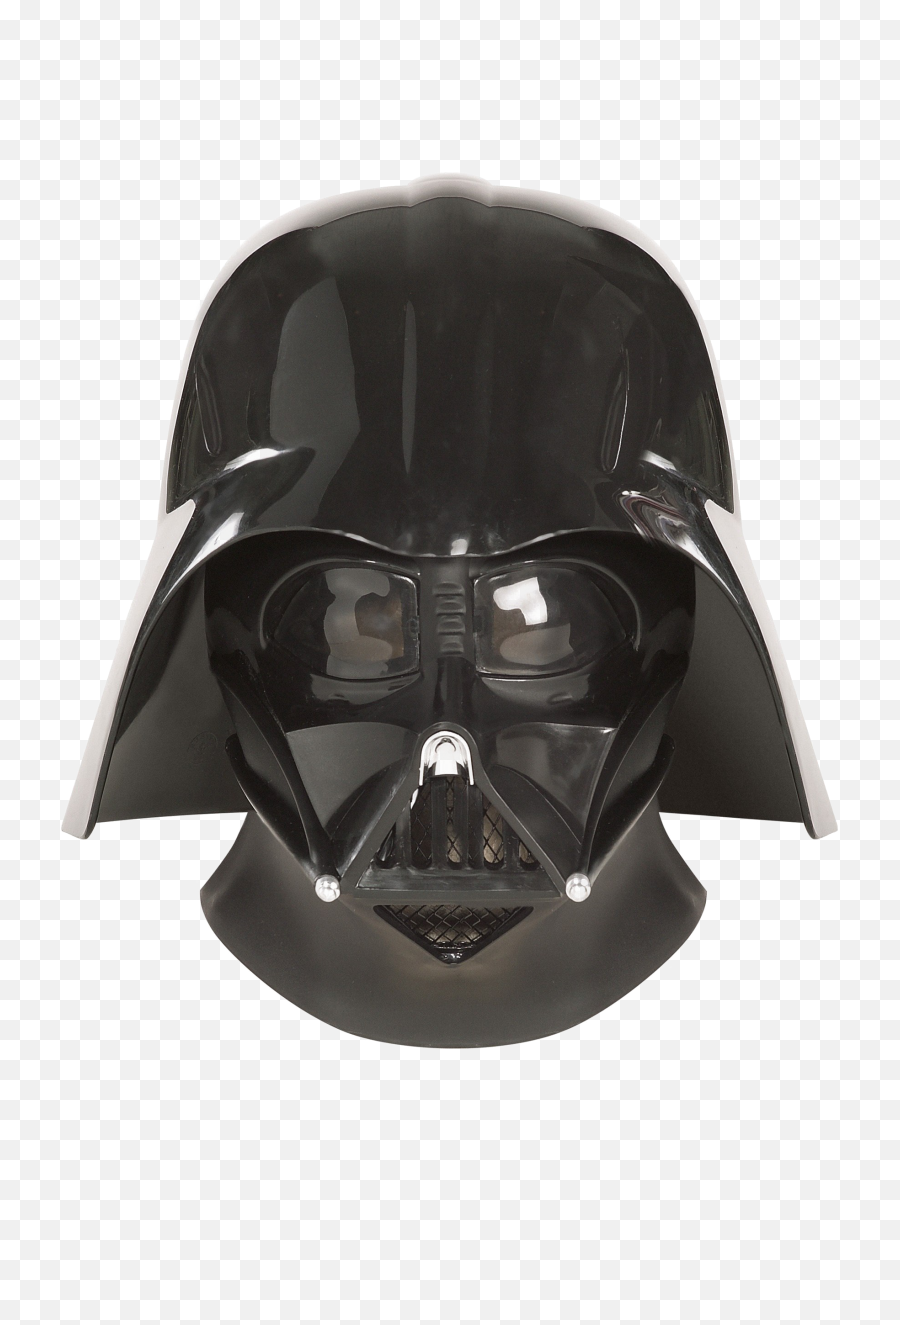 Download Darth Vader Helmet Png Image - Original Darth Vader Helmet,Darth Vader Transparent Background